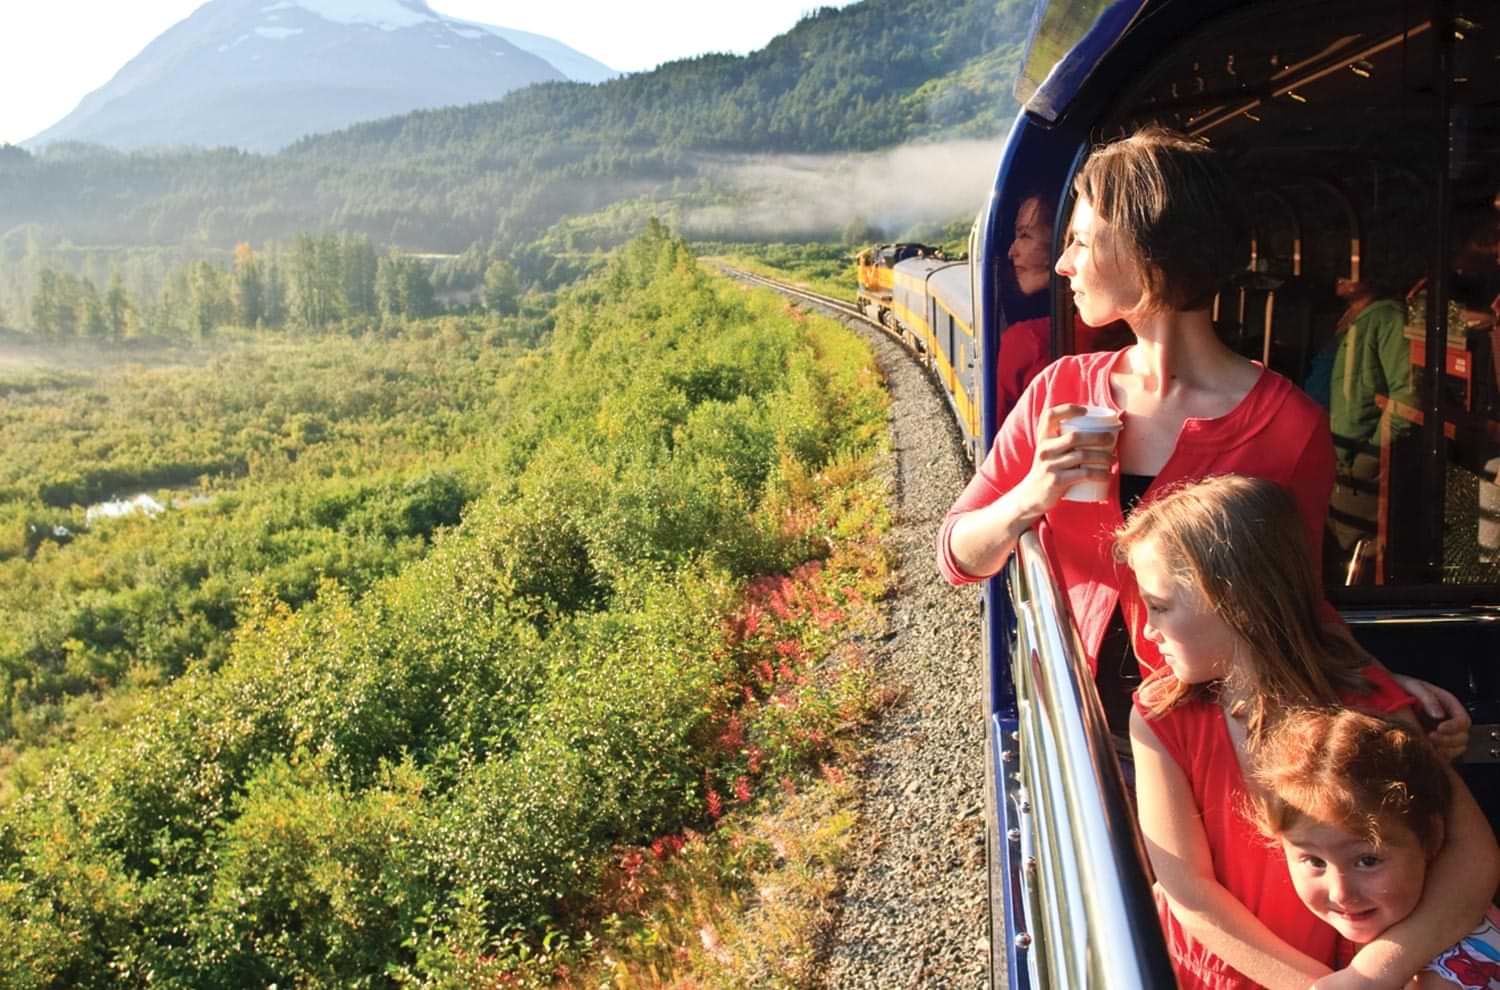 Passengers of an Alaskan train enjoy the view